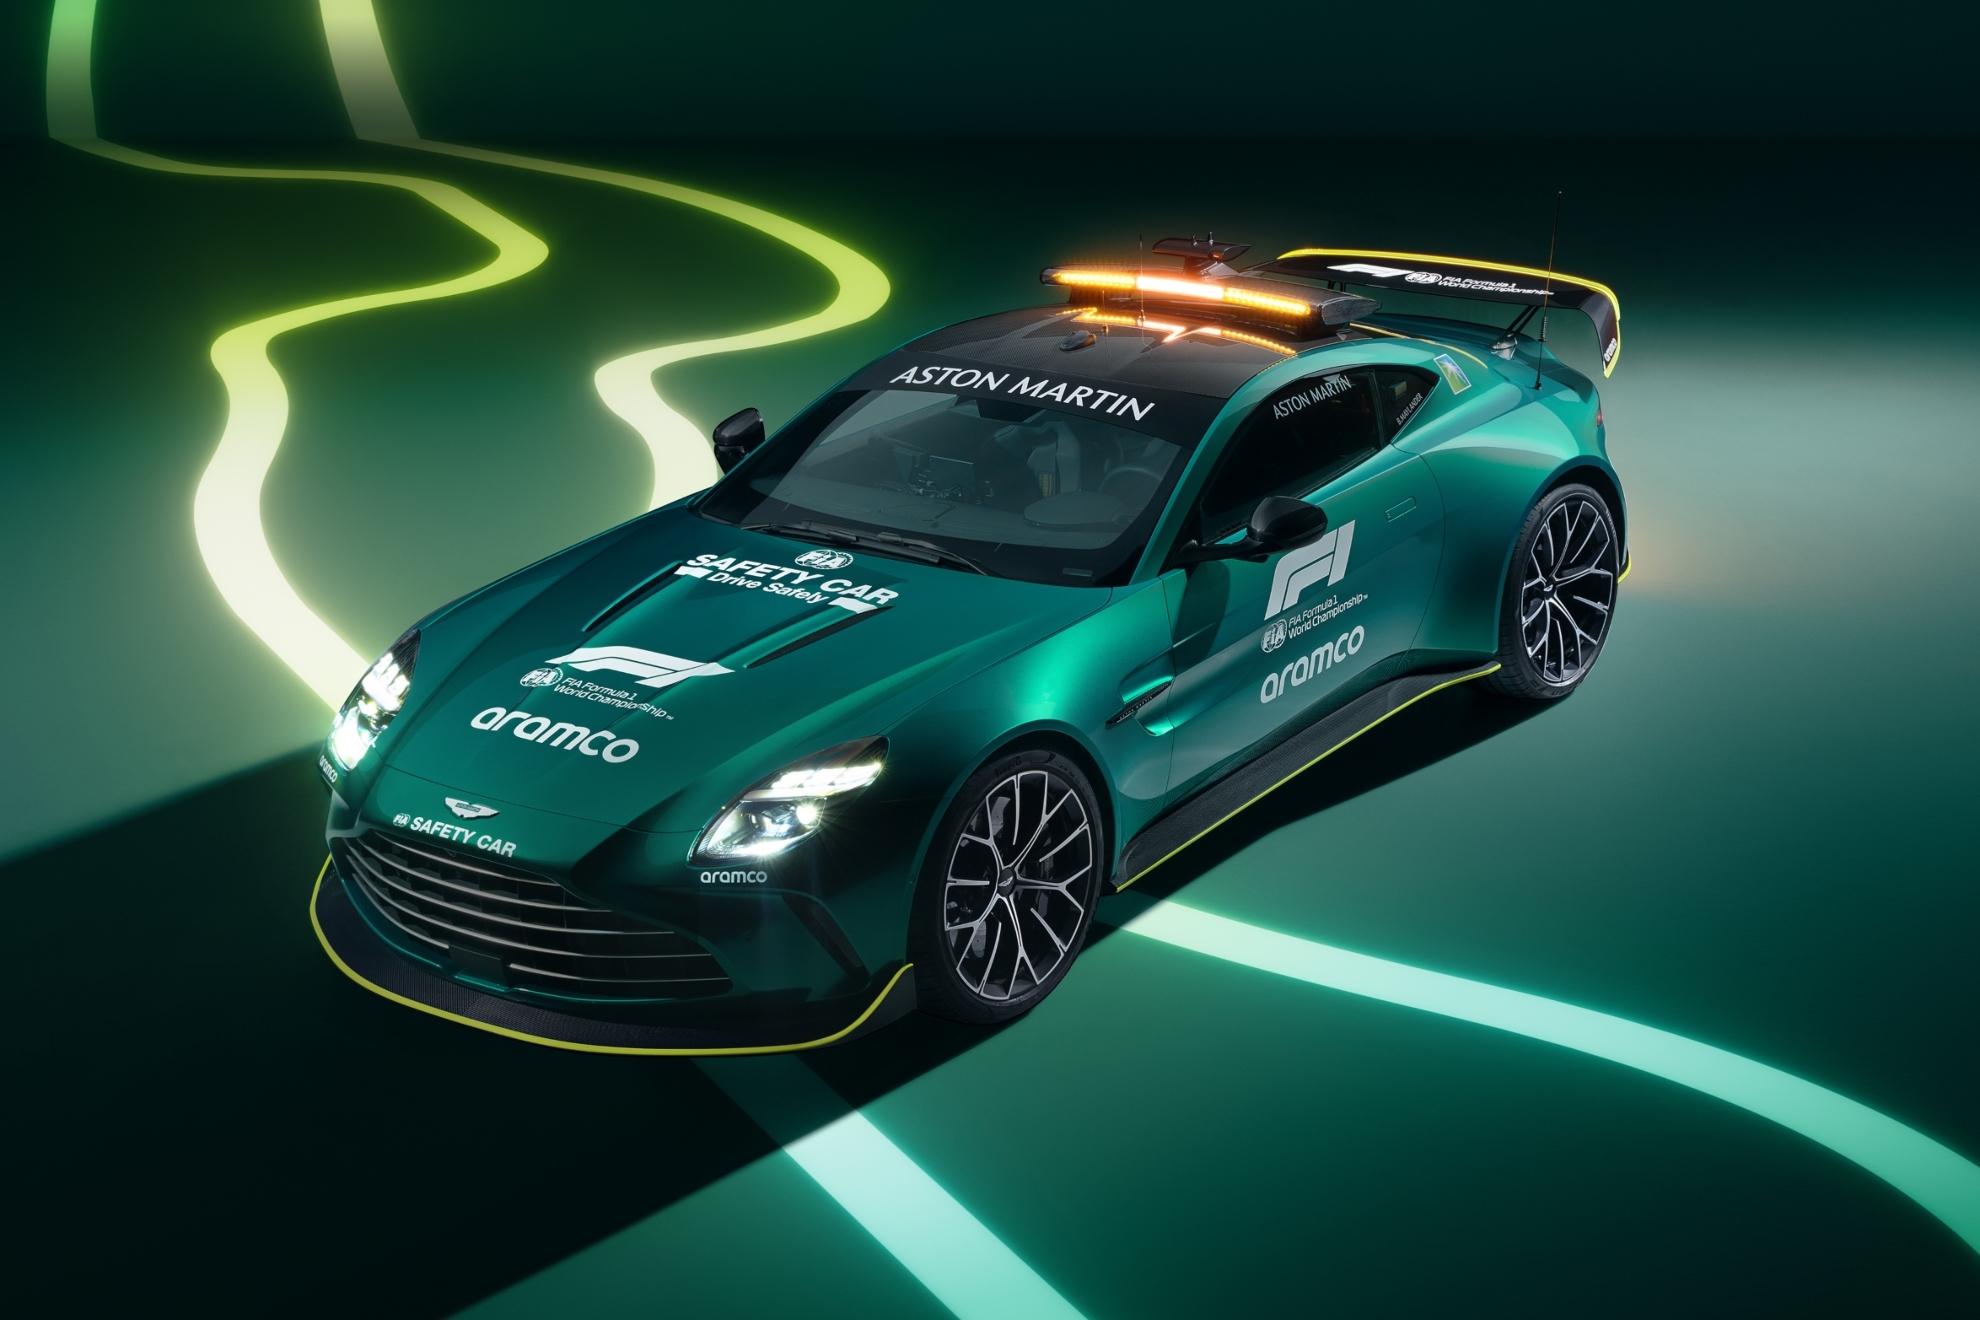 Aston Martin tendr un Safety Car mucho ms potente en 2024.